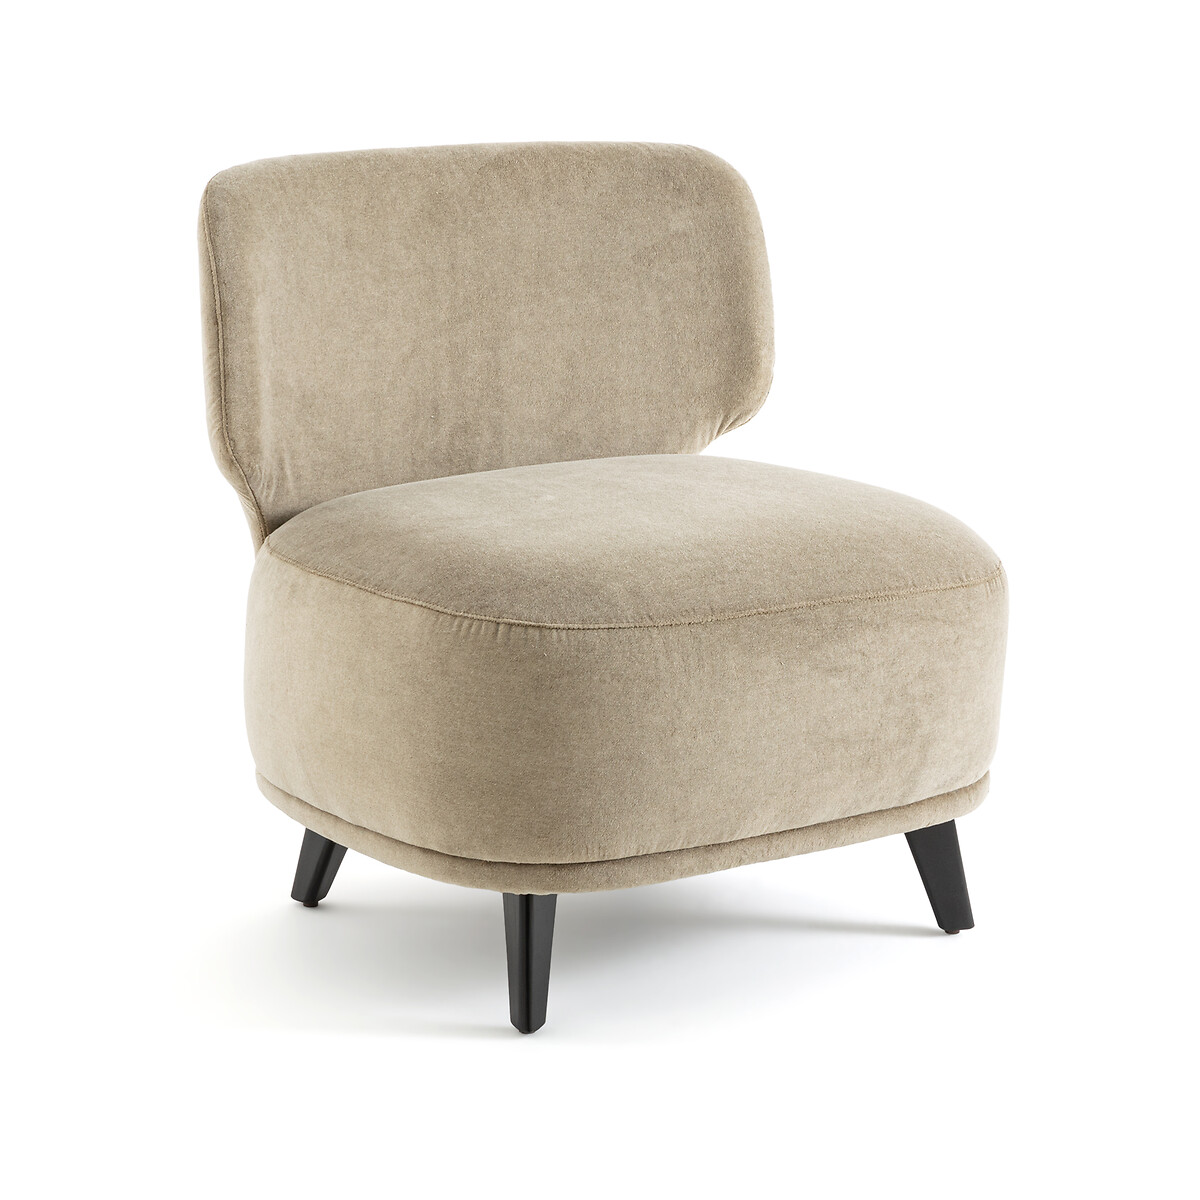 Кресло каминное XL из велюра Odalie дизайн Э Галлина единый размер бежевый кресло каминное модулируемое из велюра jonas 1 мест каштановый